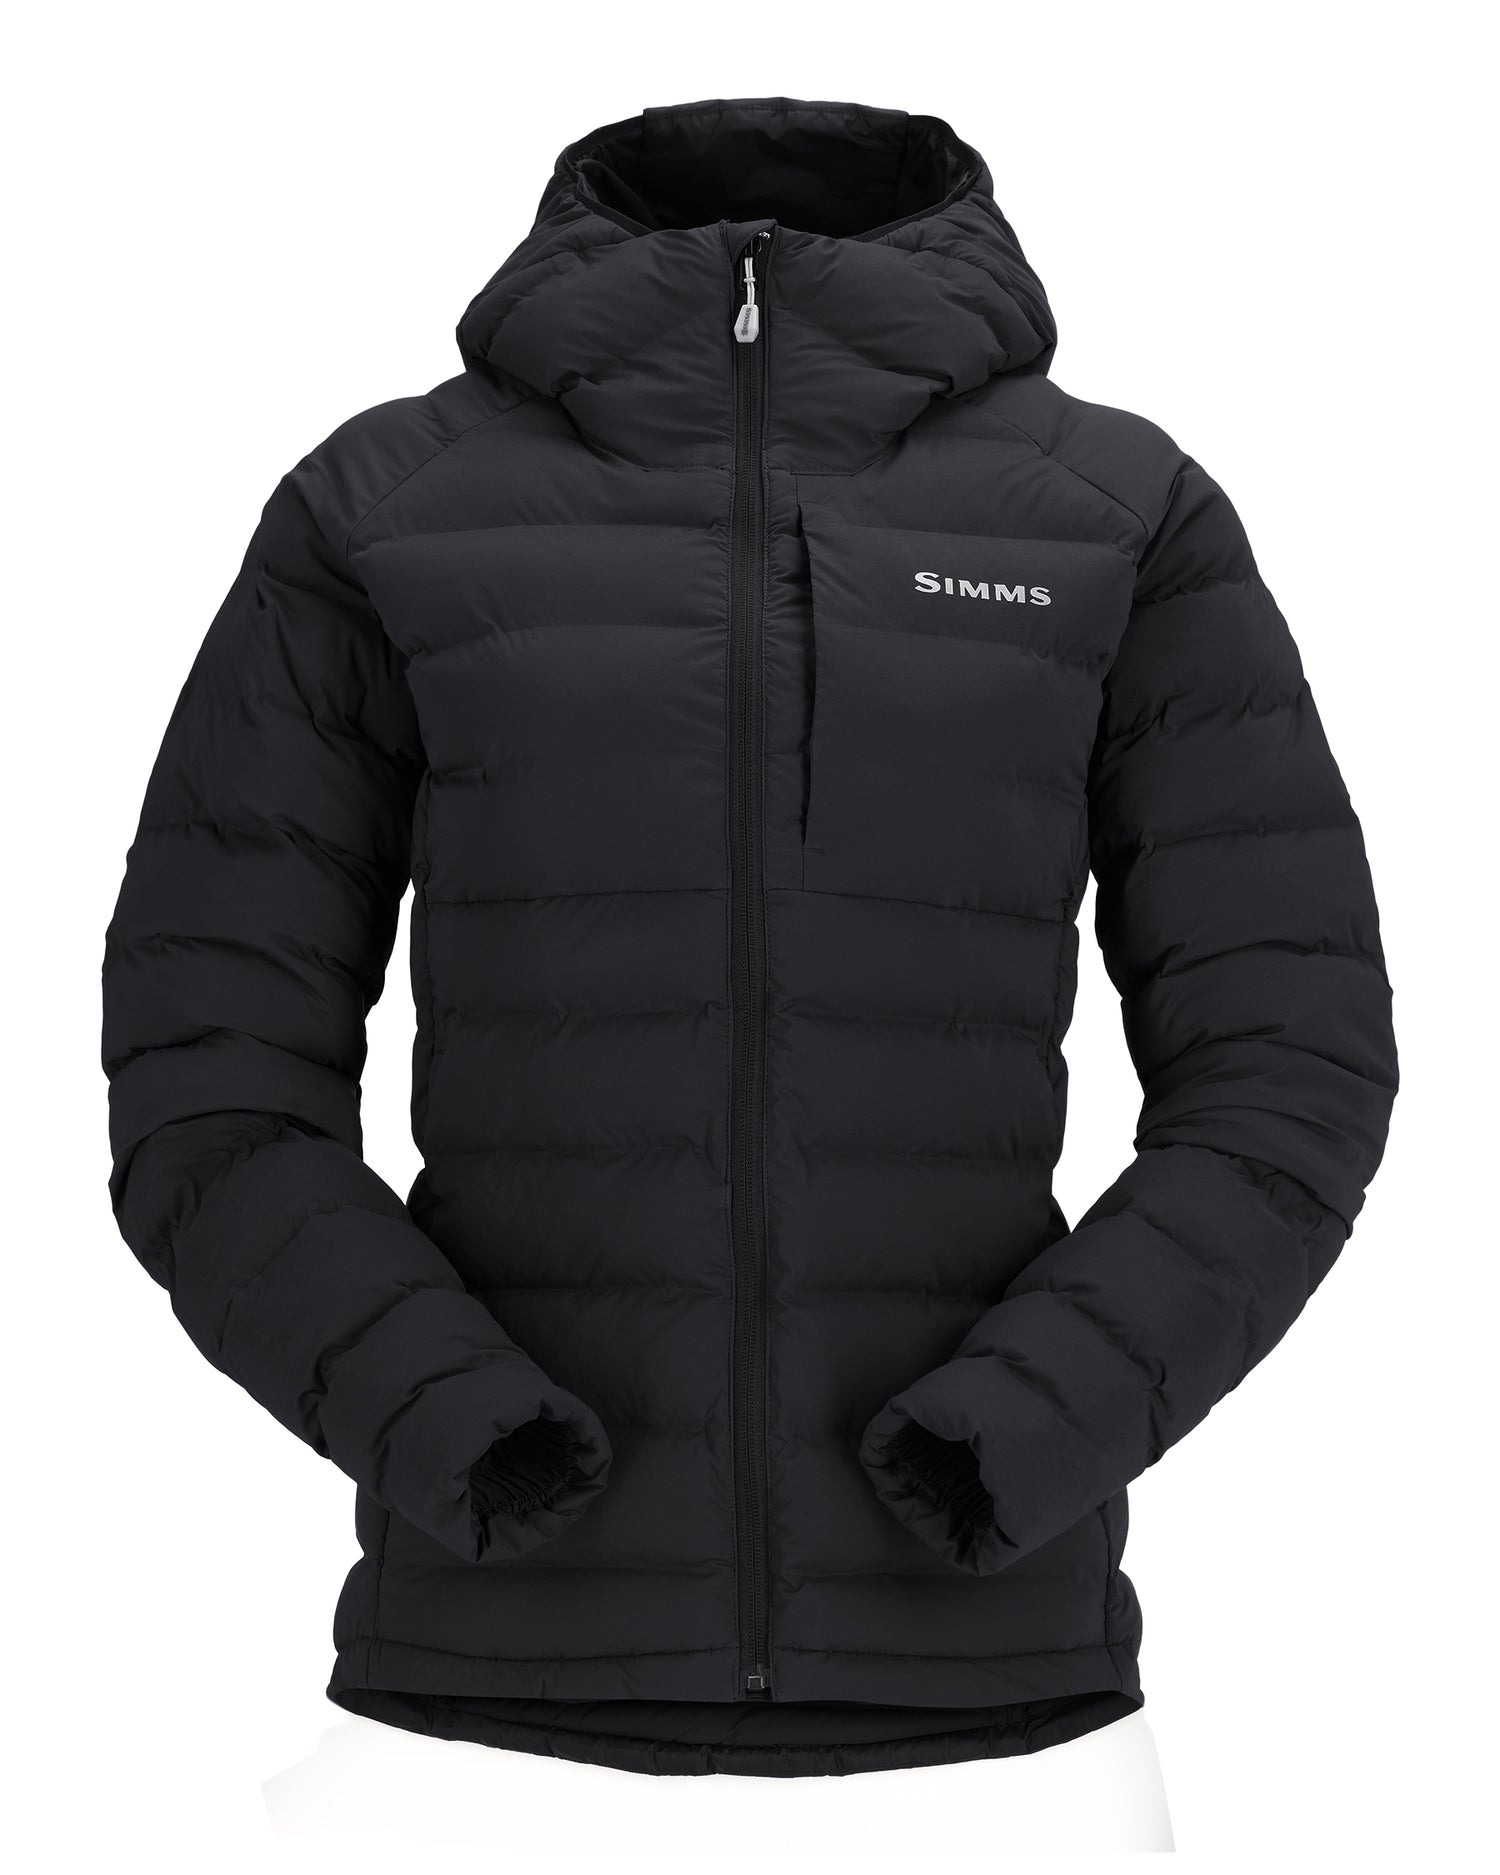 13555-001-exstream-hooded-jacket-mannequin